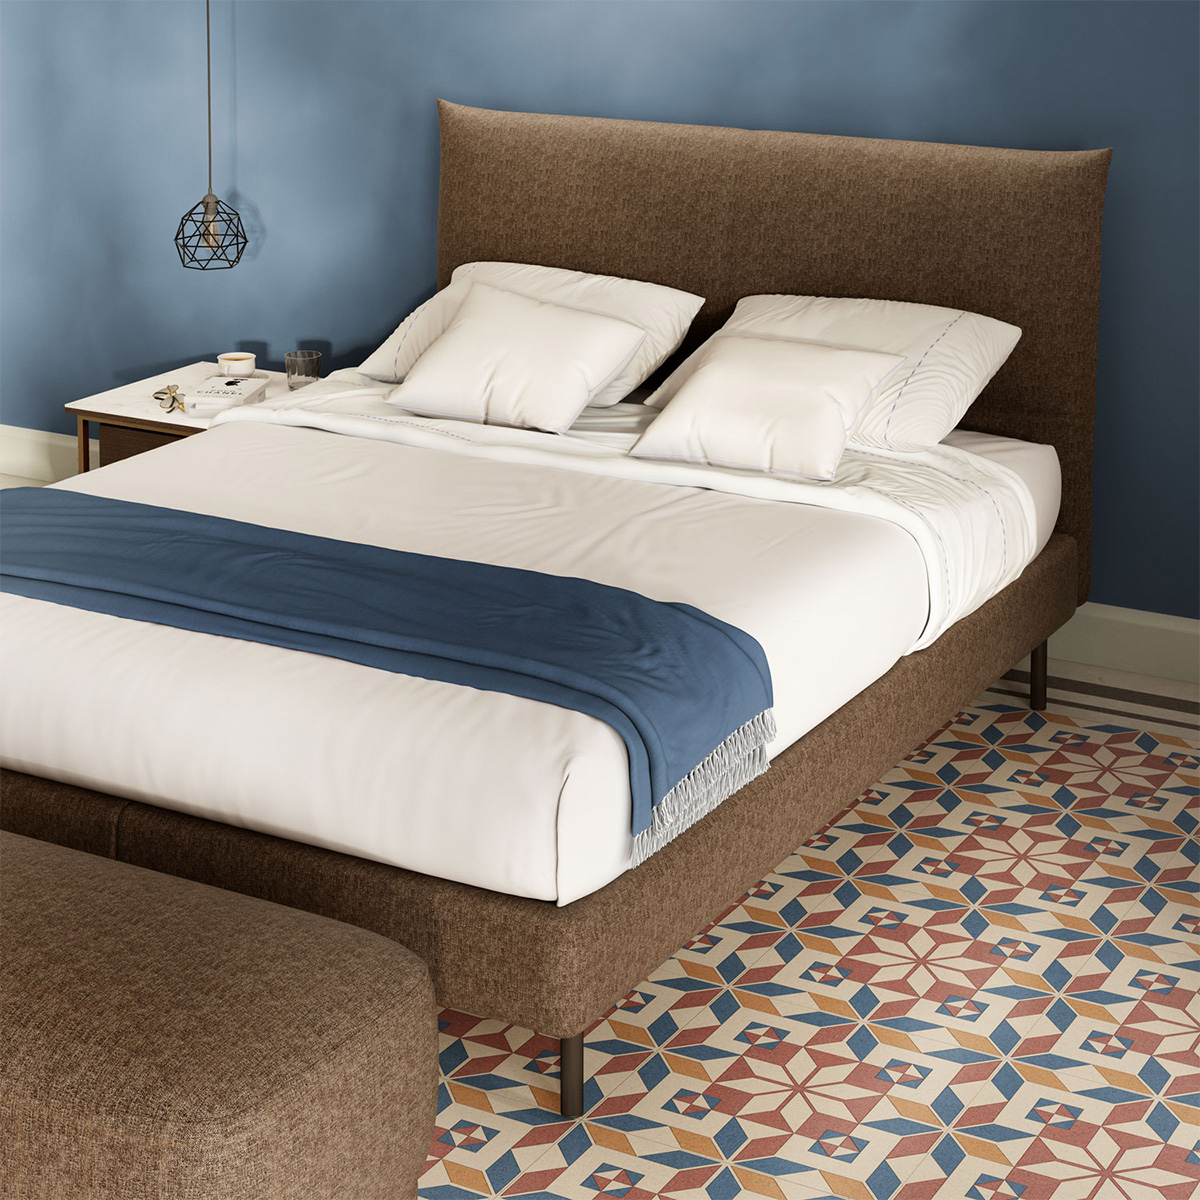 Natuzzi editorial - A bed like a sculpture